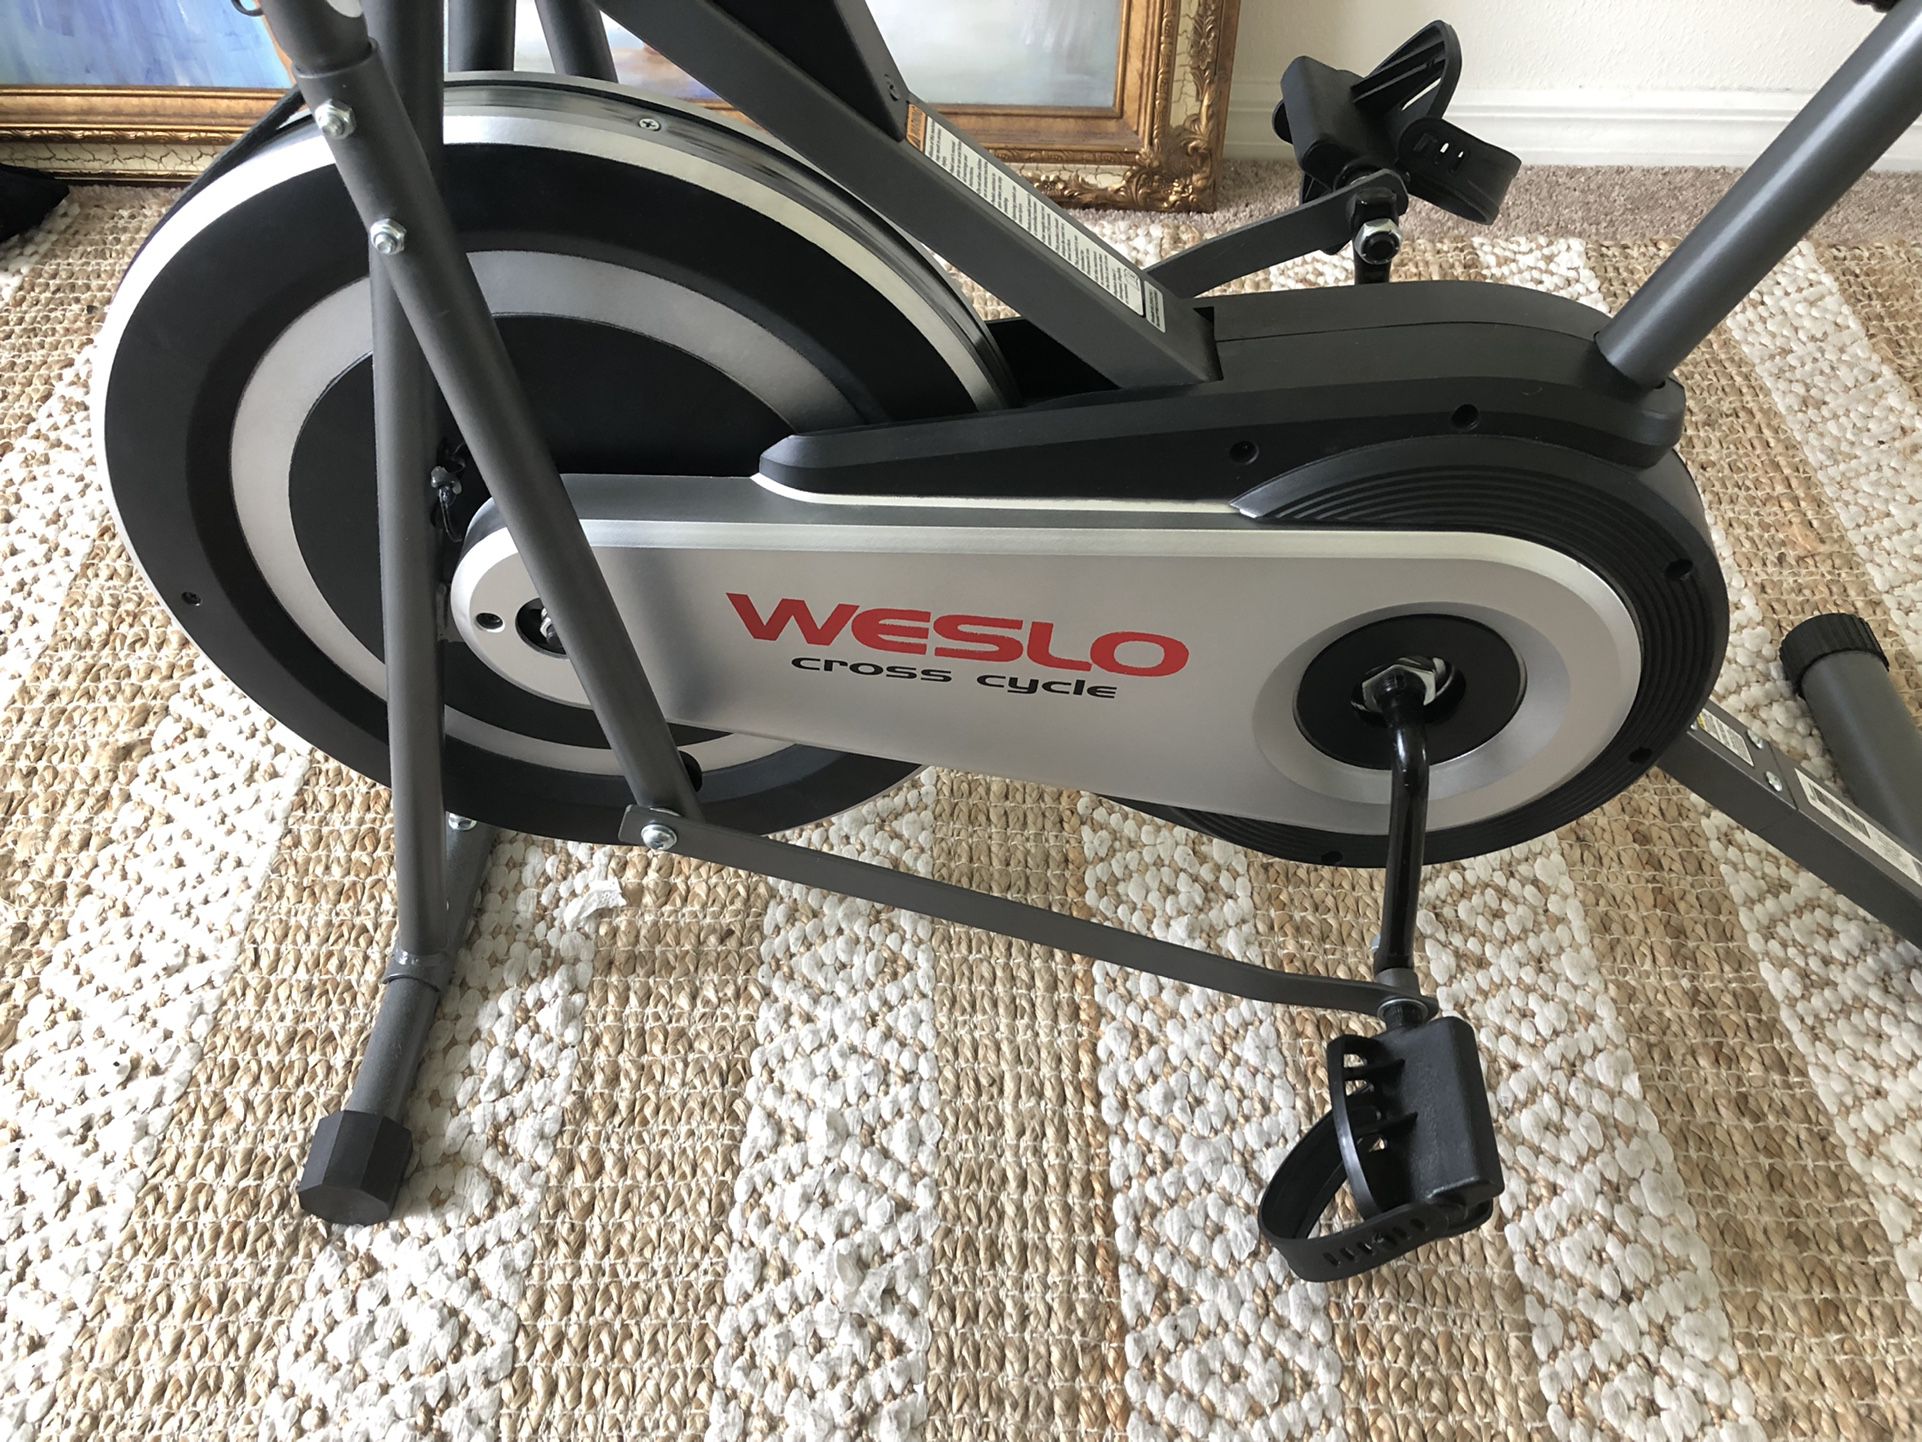 Exercise Bike Weslo Cross Cycle